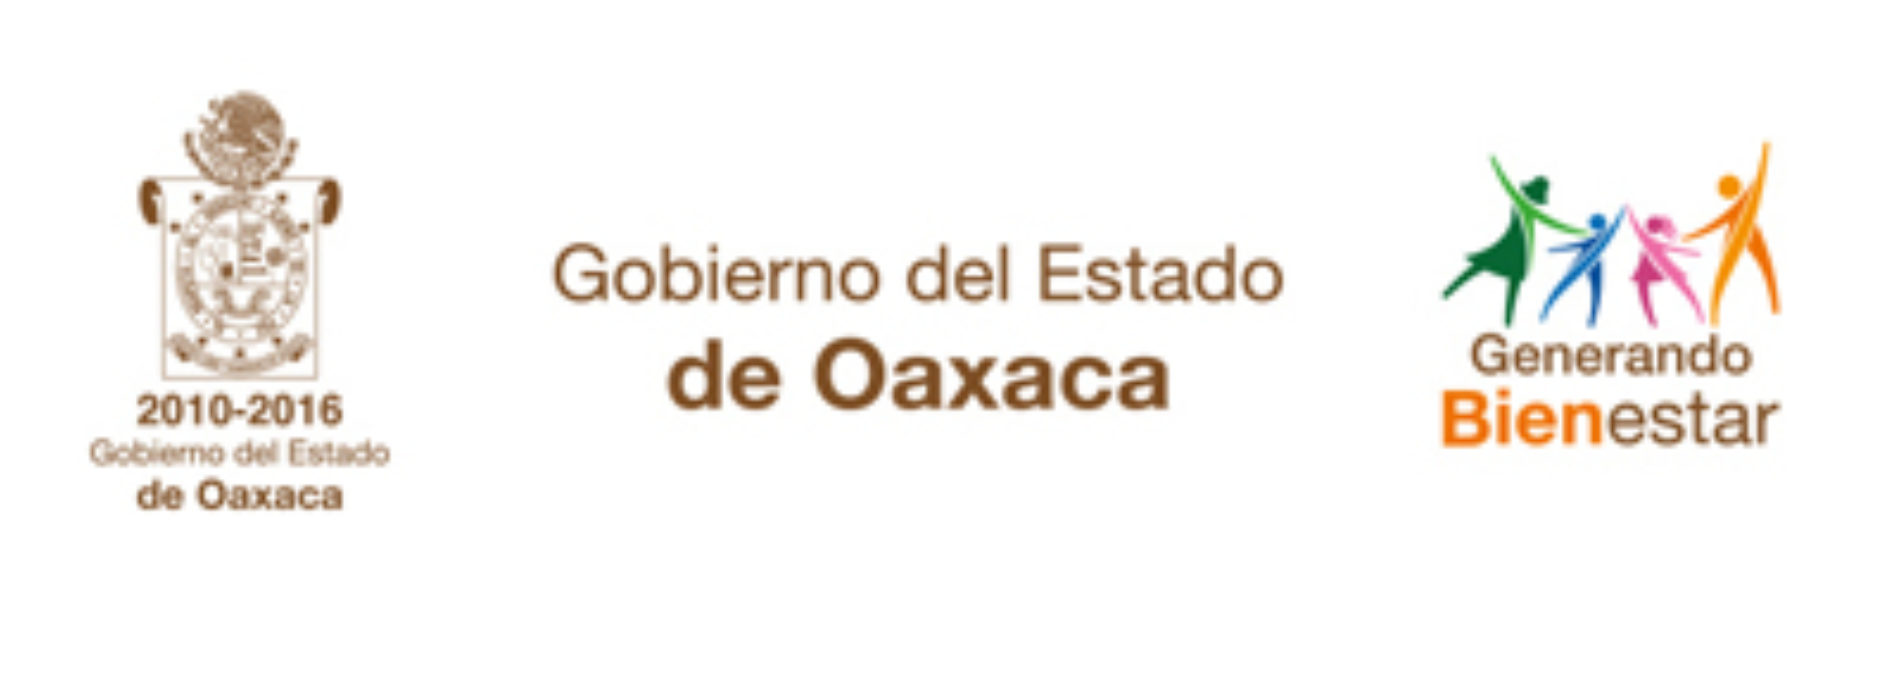 Se normaliza servicio de transporte público en Oaxaca: SEVITRA